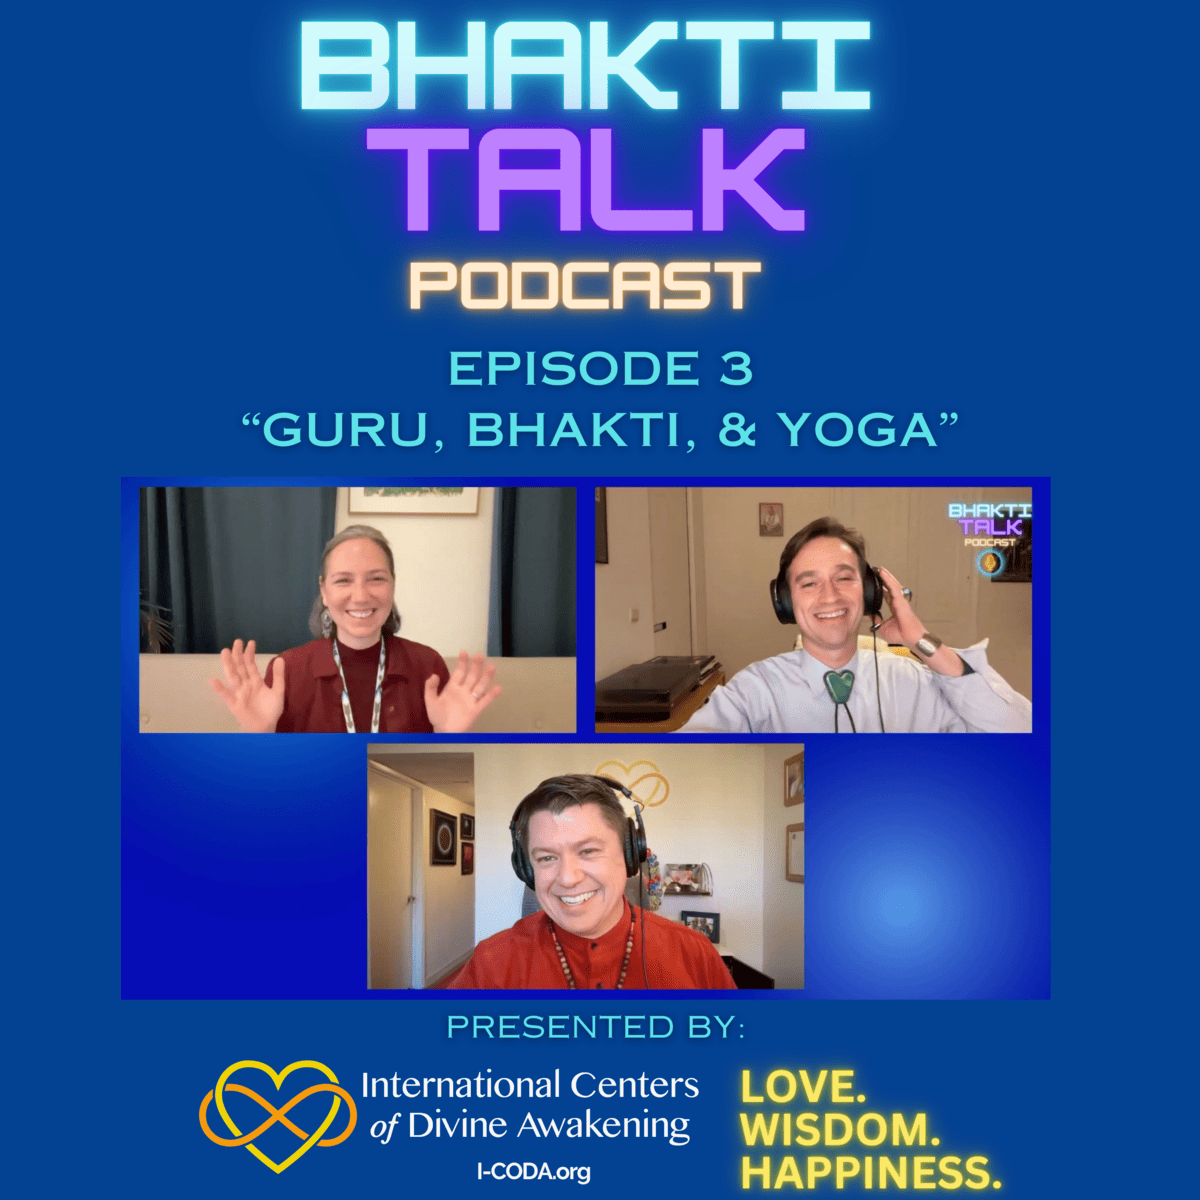 “Guru,Bhakti, & Yoga” – Episode 3